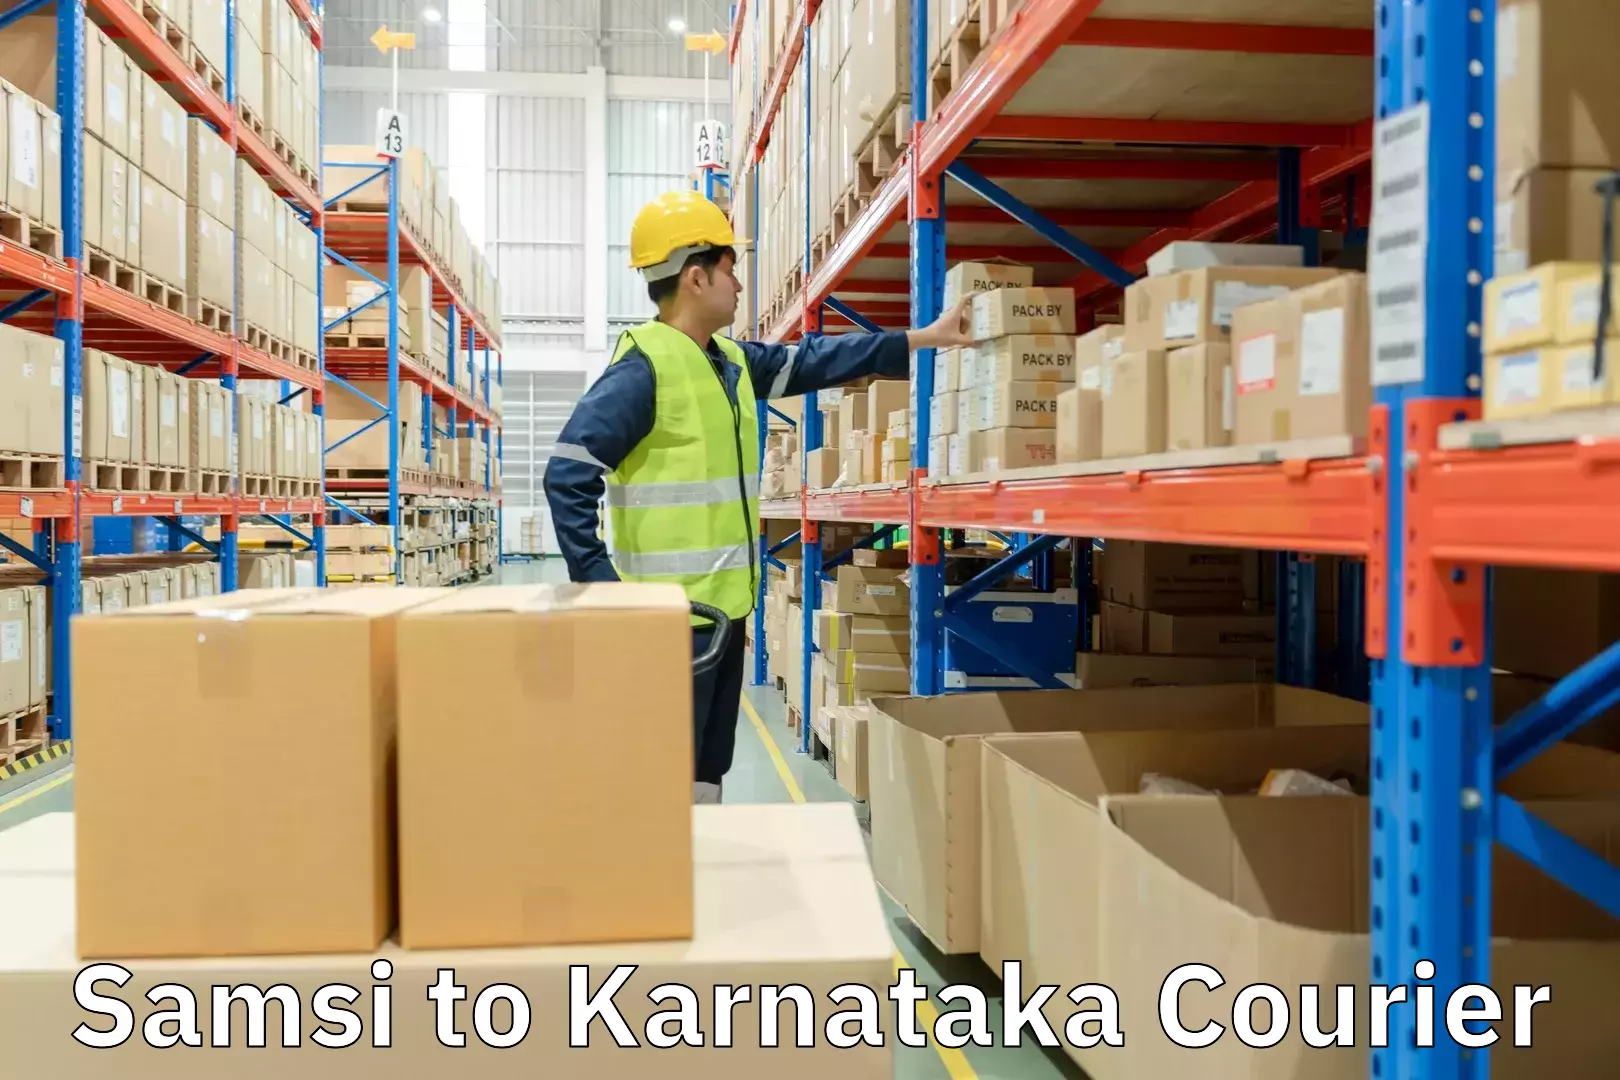 Subscription-based courier Samsi to Karnataka